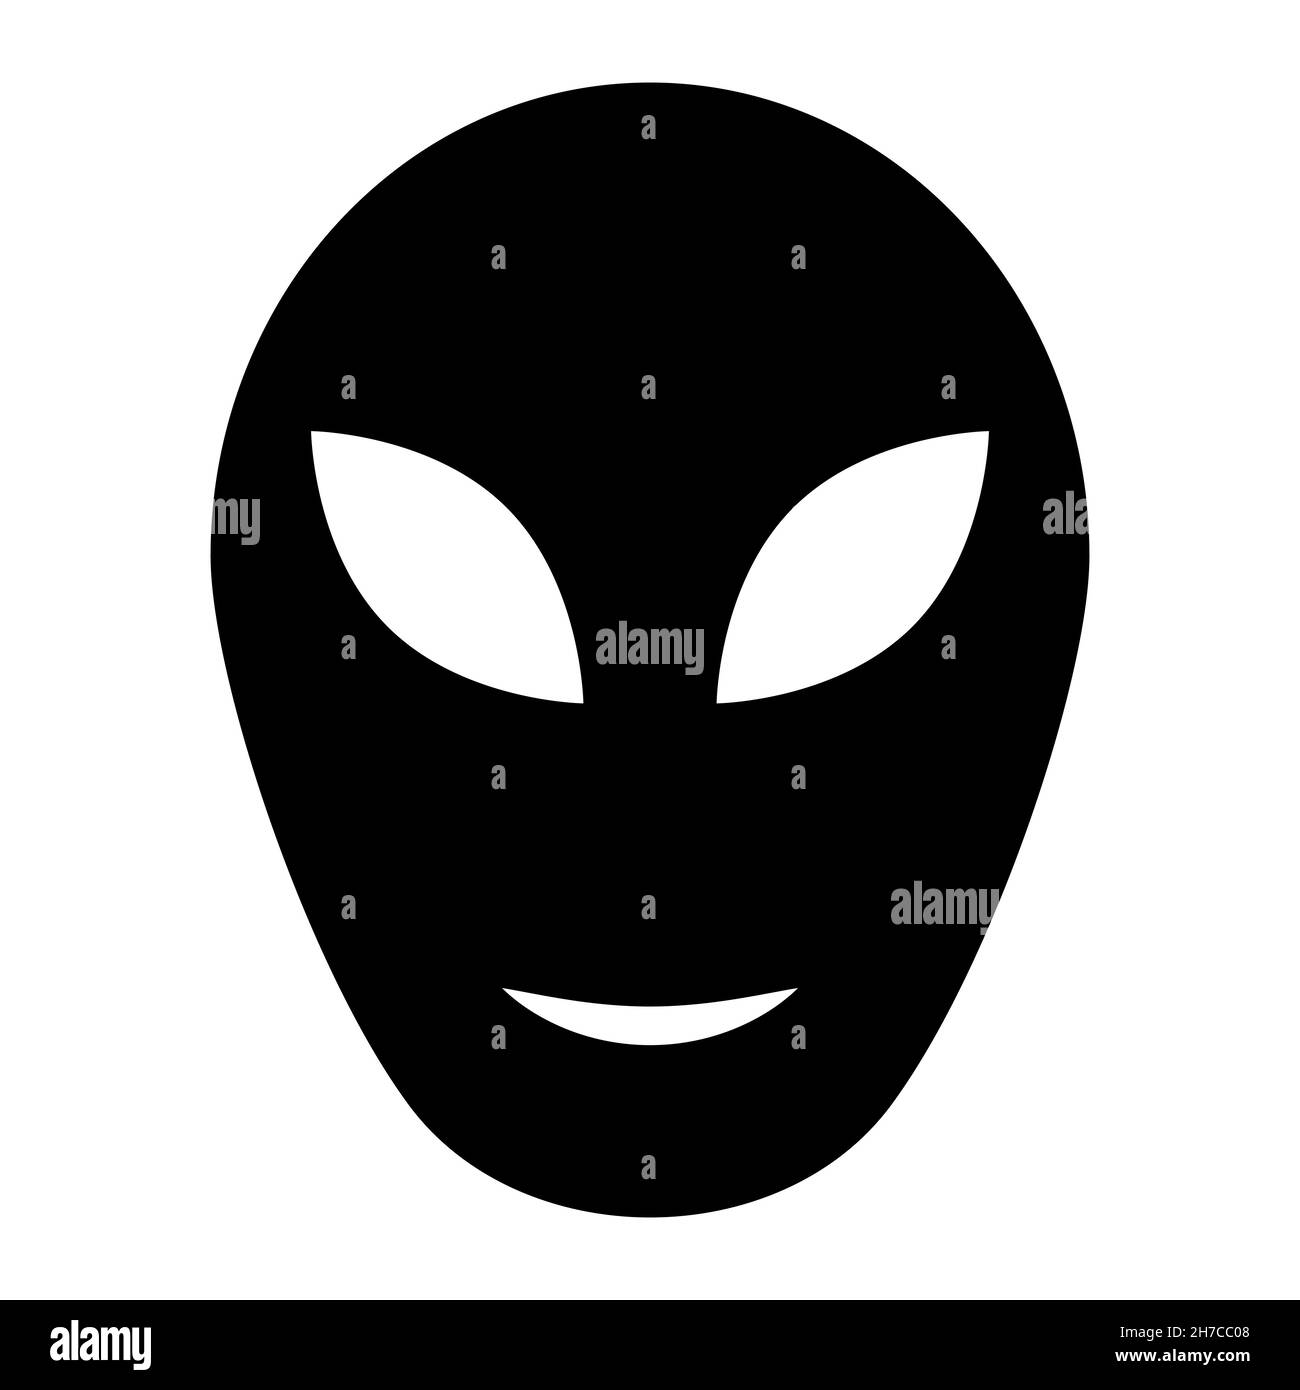 Segno di testa alieno, ufo icona umanoide alieno illustrazione stock Illustrazione Vettoriale